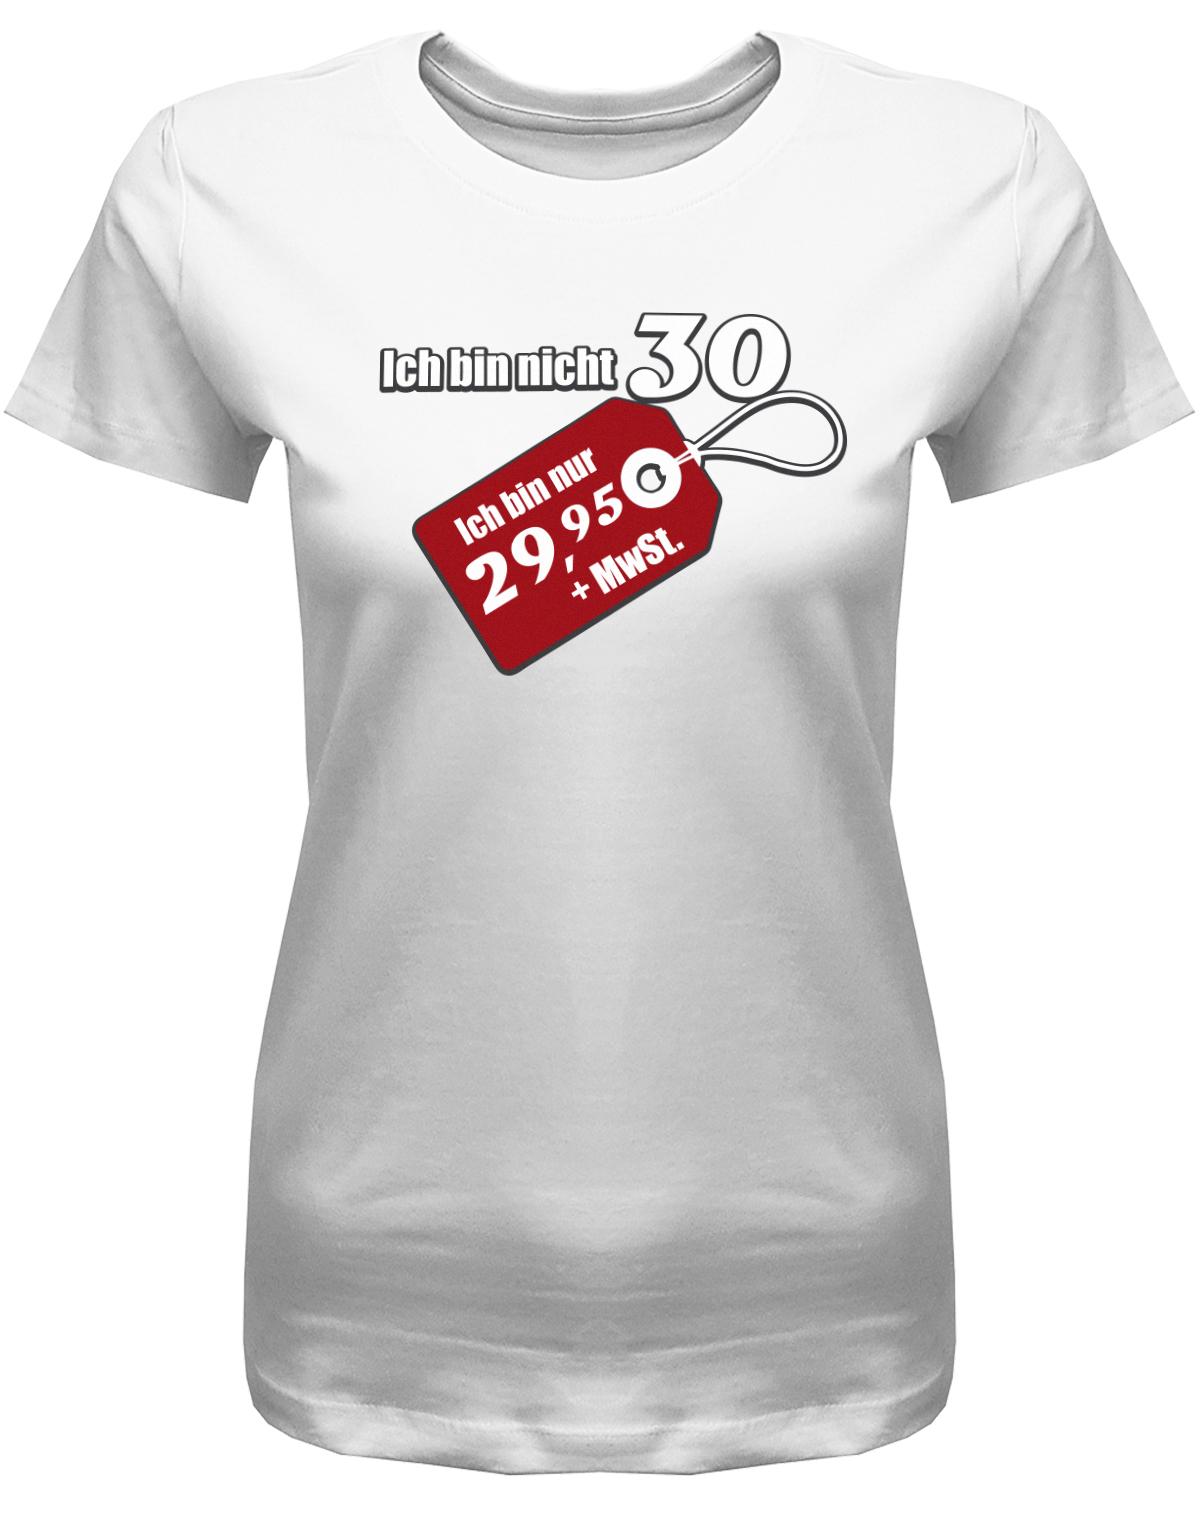 Lustiges T-Shirt zum 30. Geburtstag für die Frau Bedruckt mit Ich bin nicht 30 ich bin 29,95 plus MwSt. Sonderpreis Etikett. Weiss